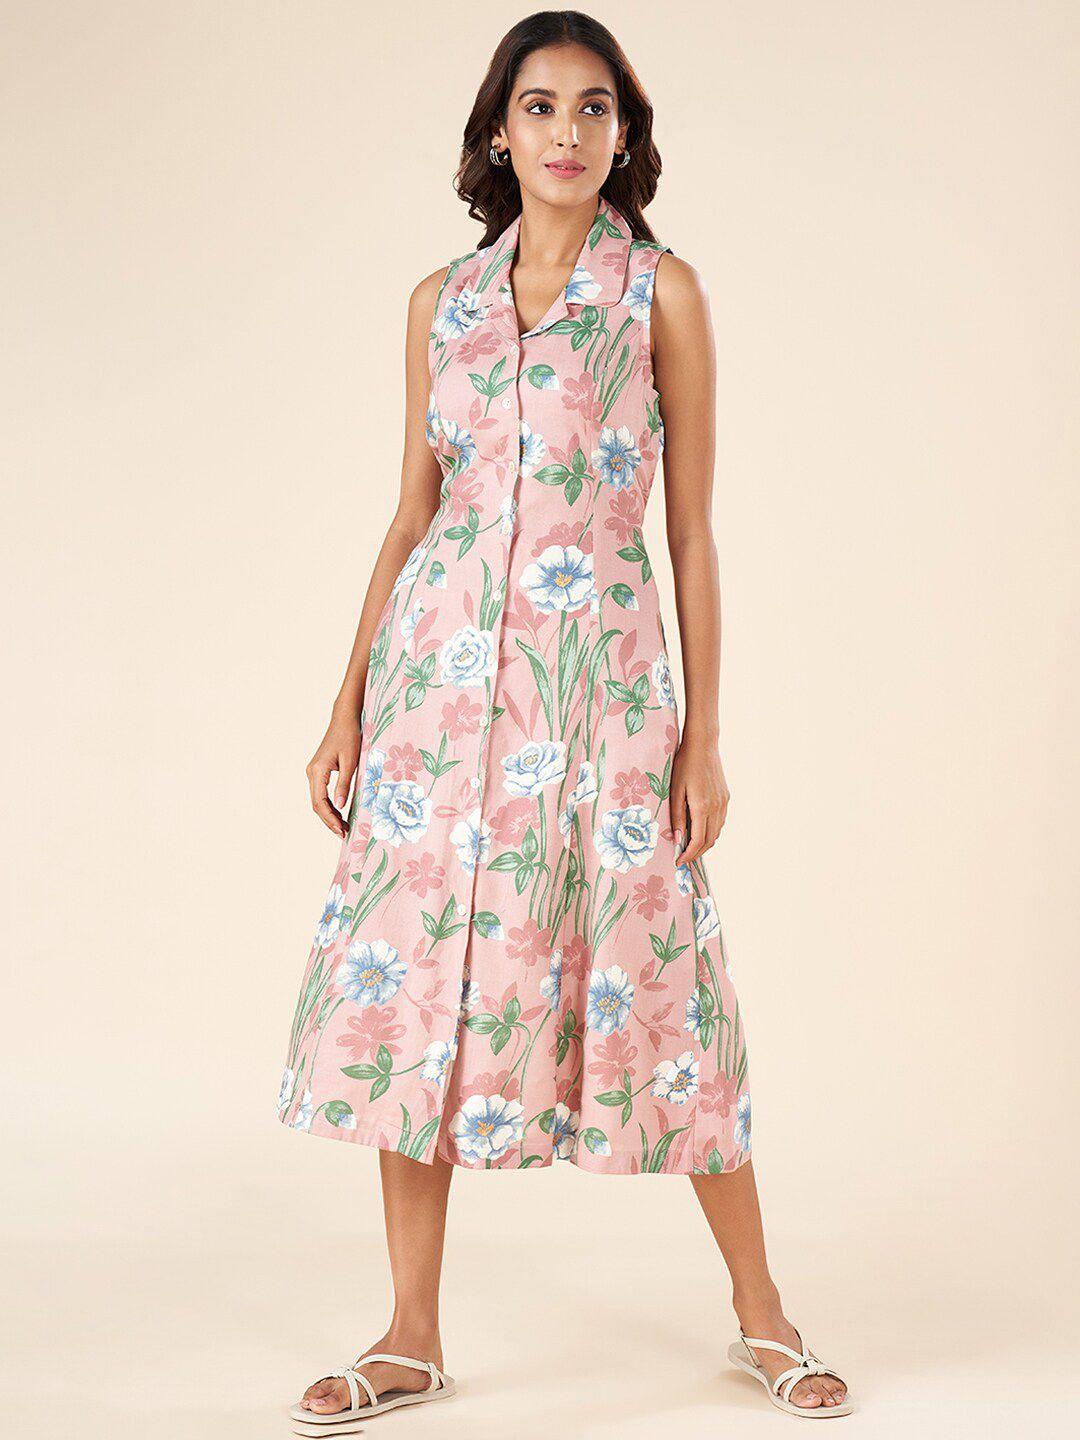 akkriti-by-pantaloons-floral-printed-shirt-midi-dress